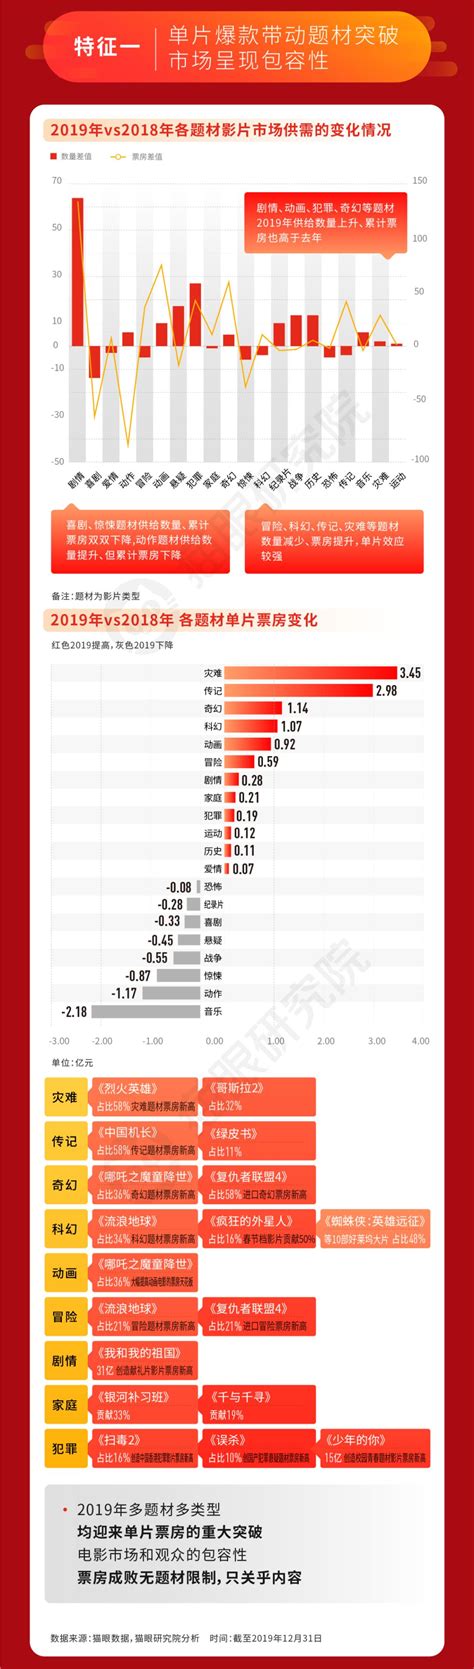 猫眼数据：642.66亿总票房的2019，为中国电影市场下个十年“建基”的关键一年-36氪